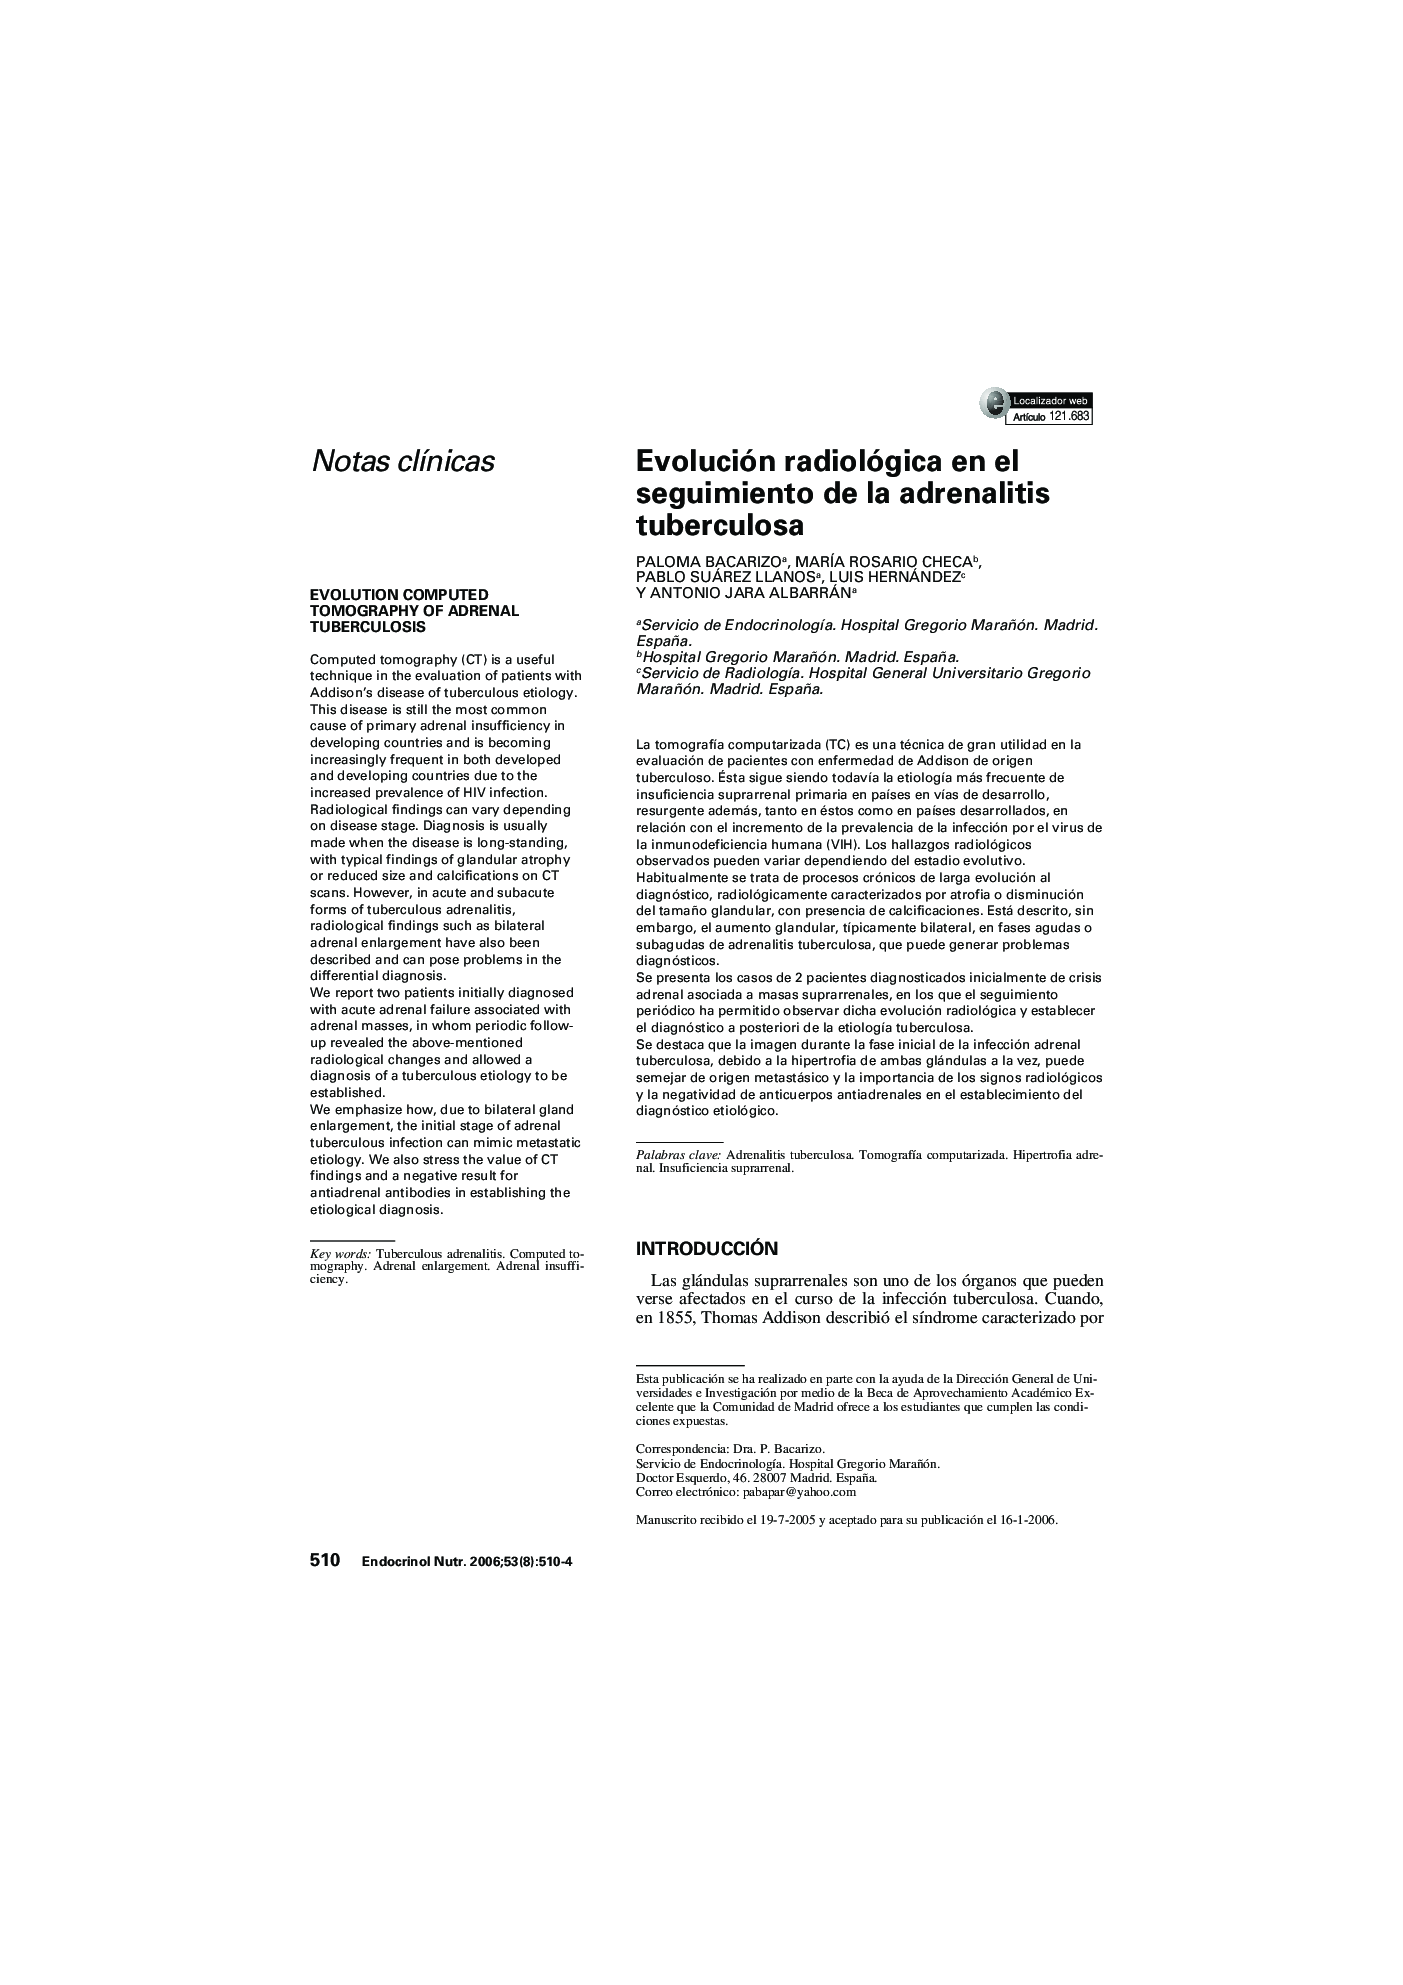 Evolución radiológica en el seguimiento de la adrenalitis tuberculosa